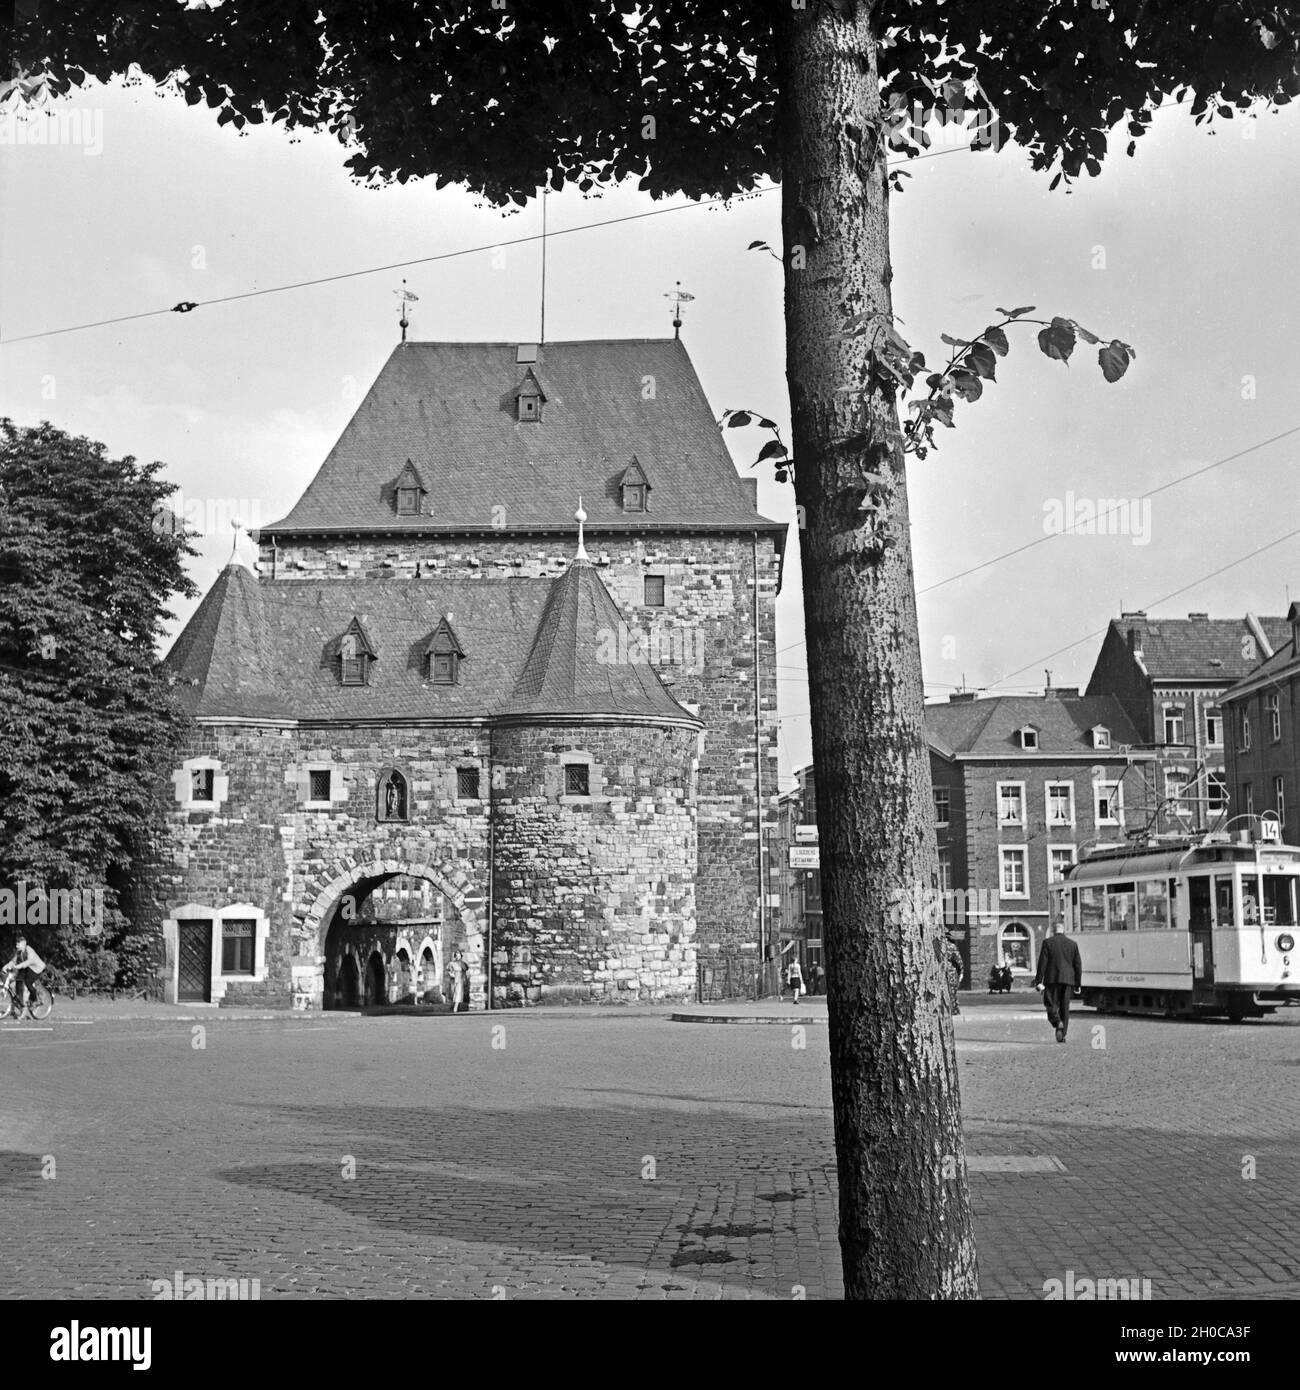 Das ponttor mit Vortor in Aachen, Deutschland, 1930er Jahre. Ponttor City Gate mit Front Gate in Aachen, Deutschland 1930. Stockfoto